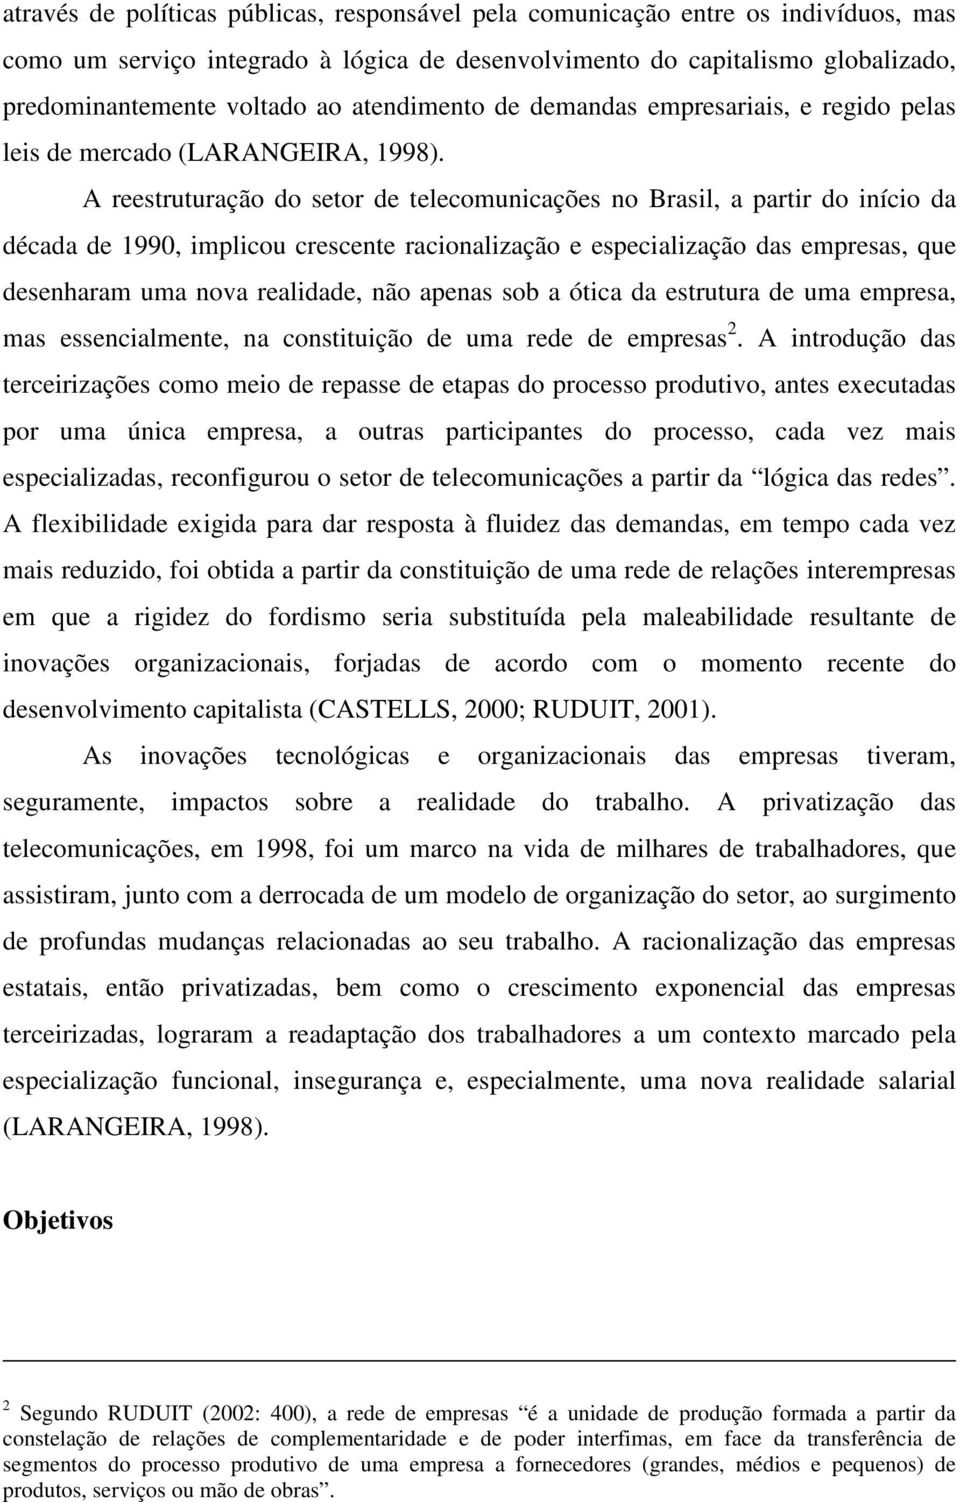 A reestruturação do setor de telecomunicações no Brasil, a partir do início da década de 1990, implicou crescente racionalização e especialização das empresas, que desenharam uma nova realidade, não